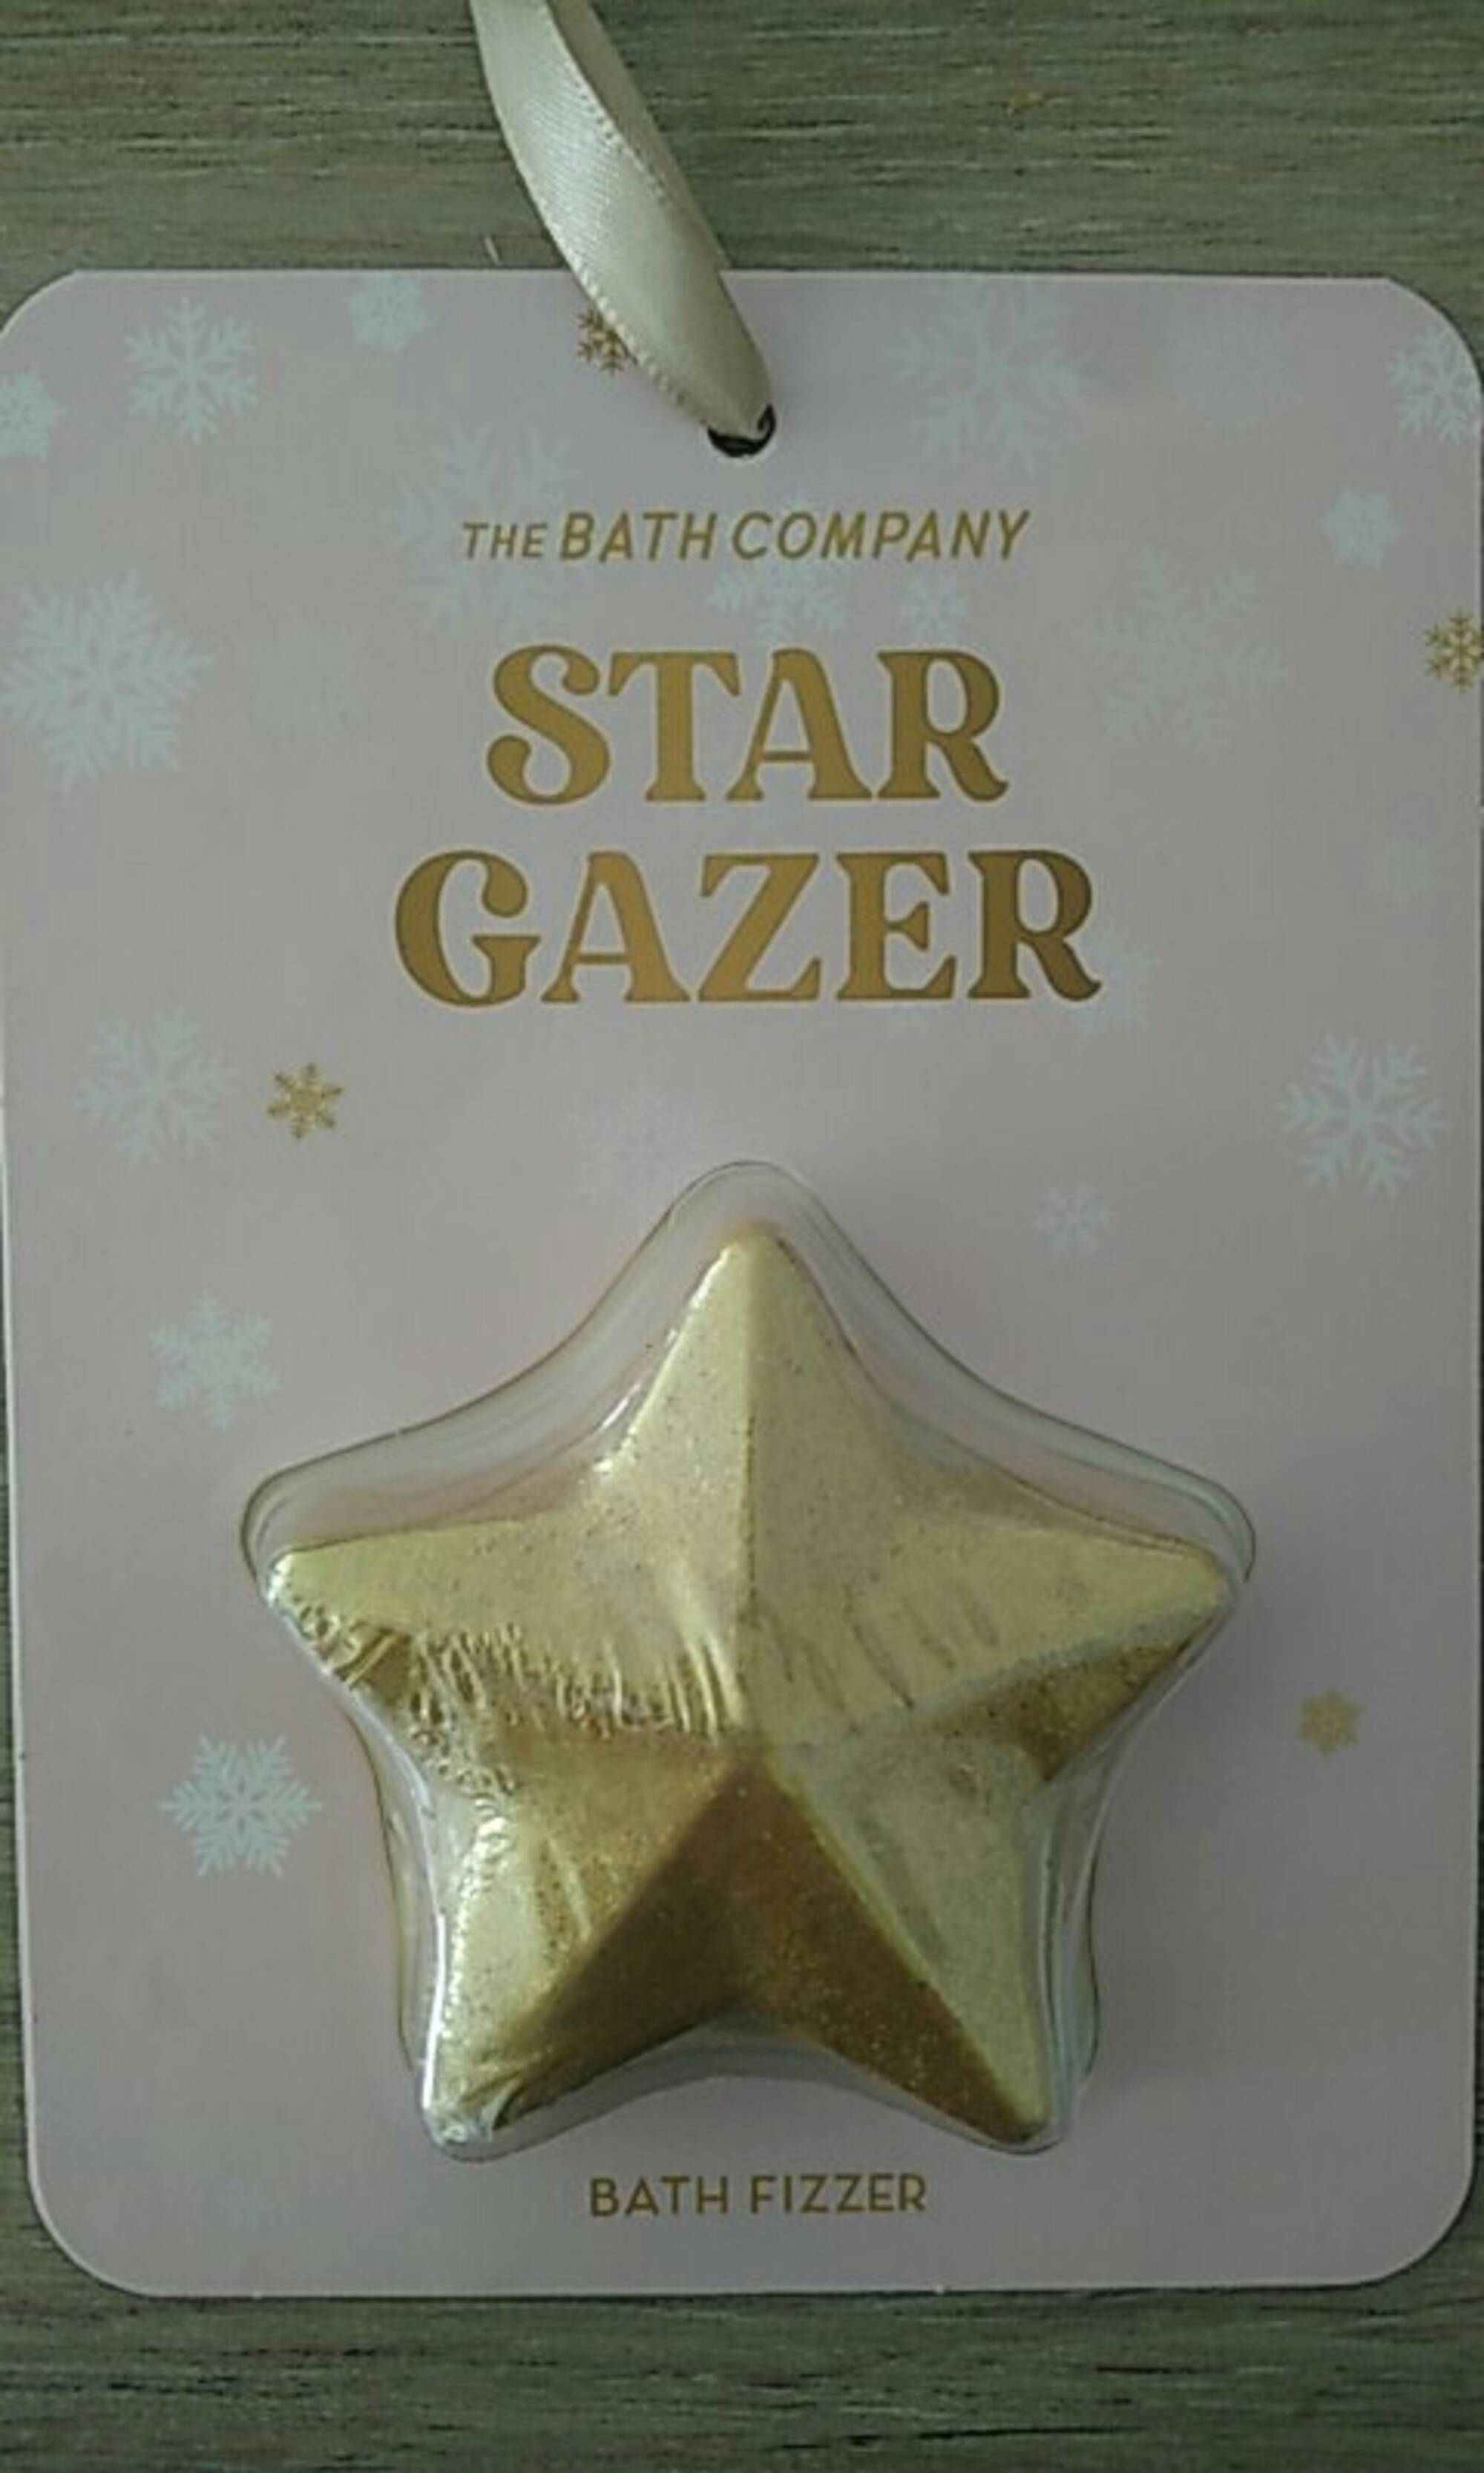 THE BATH COMPANY - Star gazer - Bath fizzer